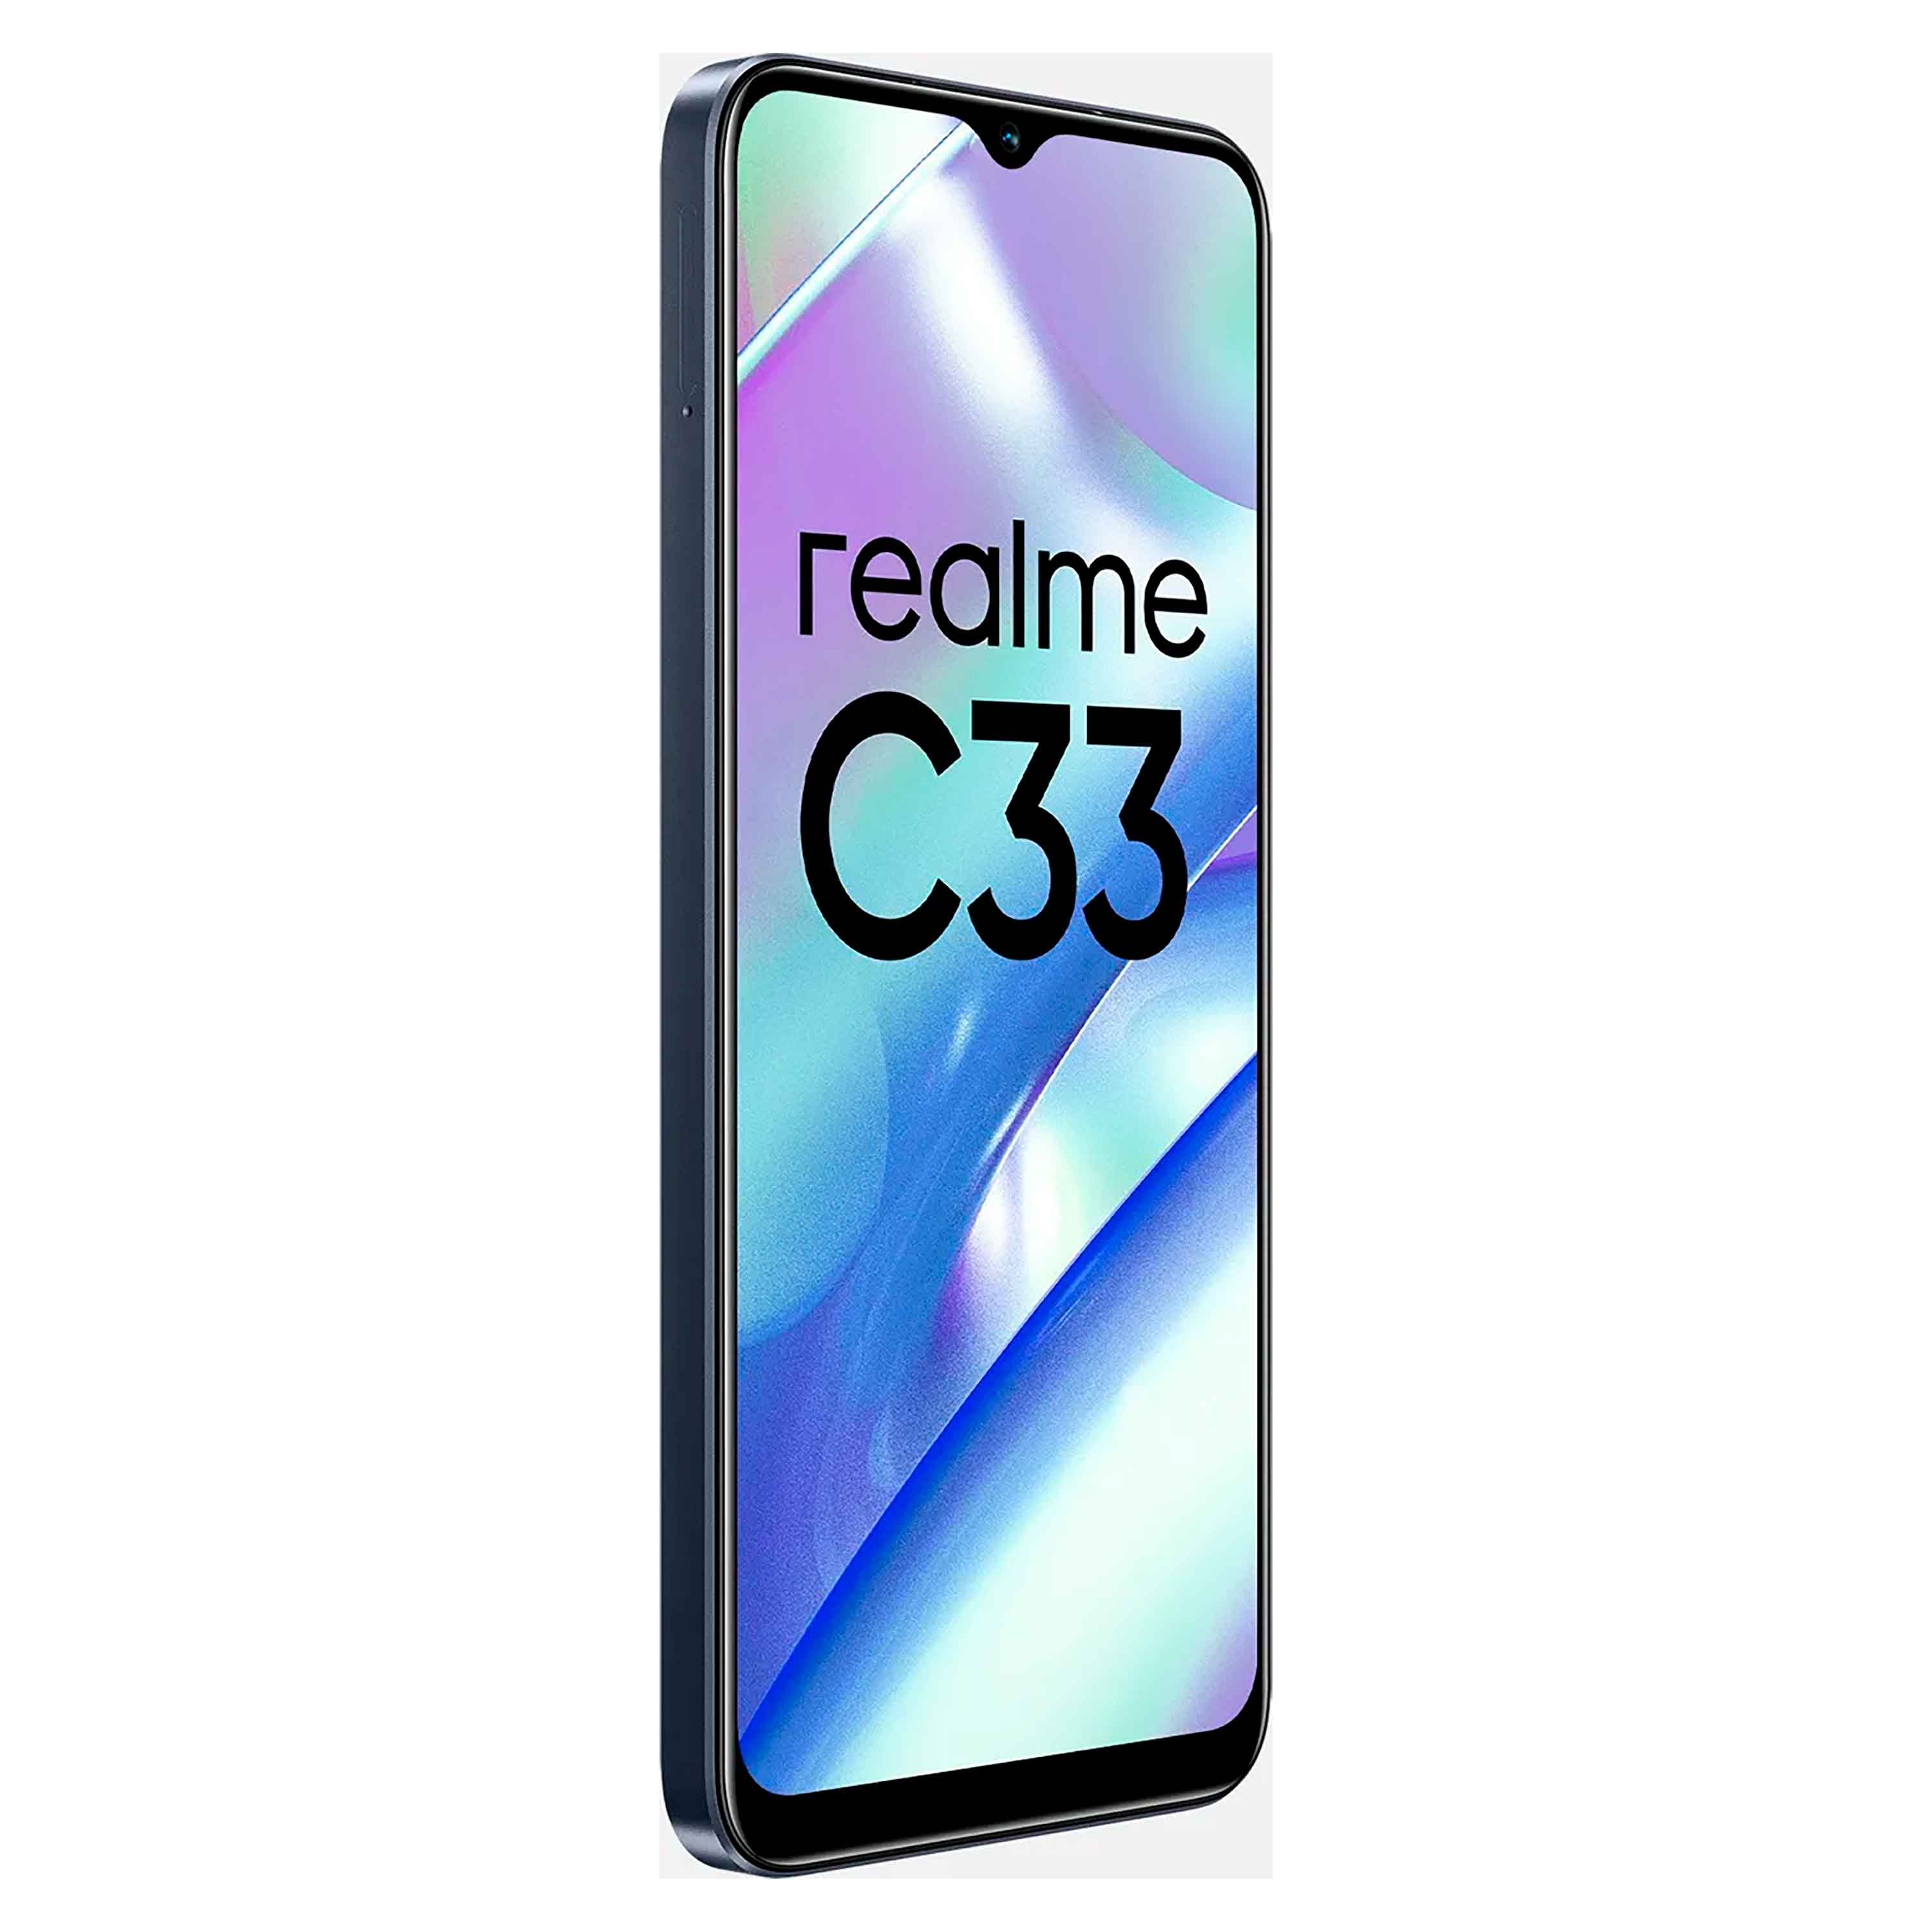 Realme Celular C33